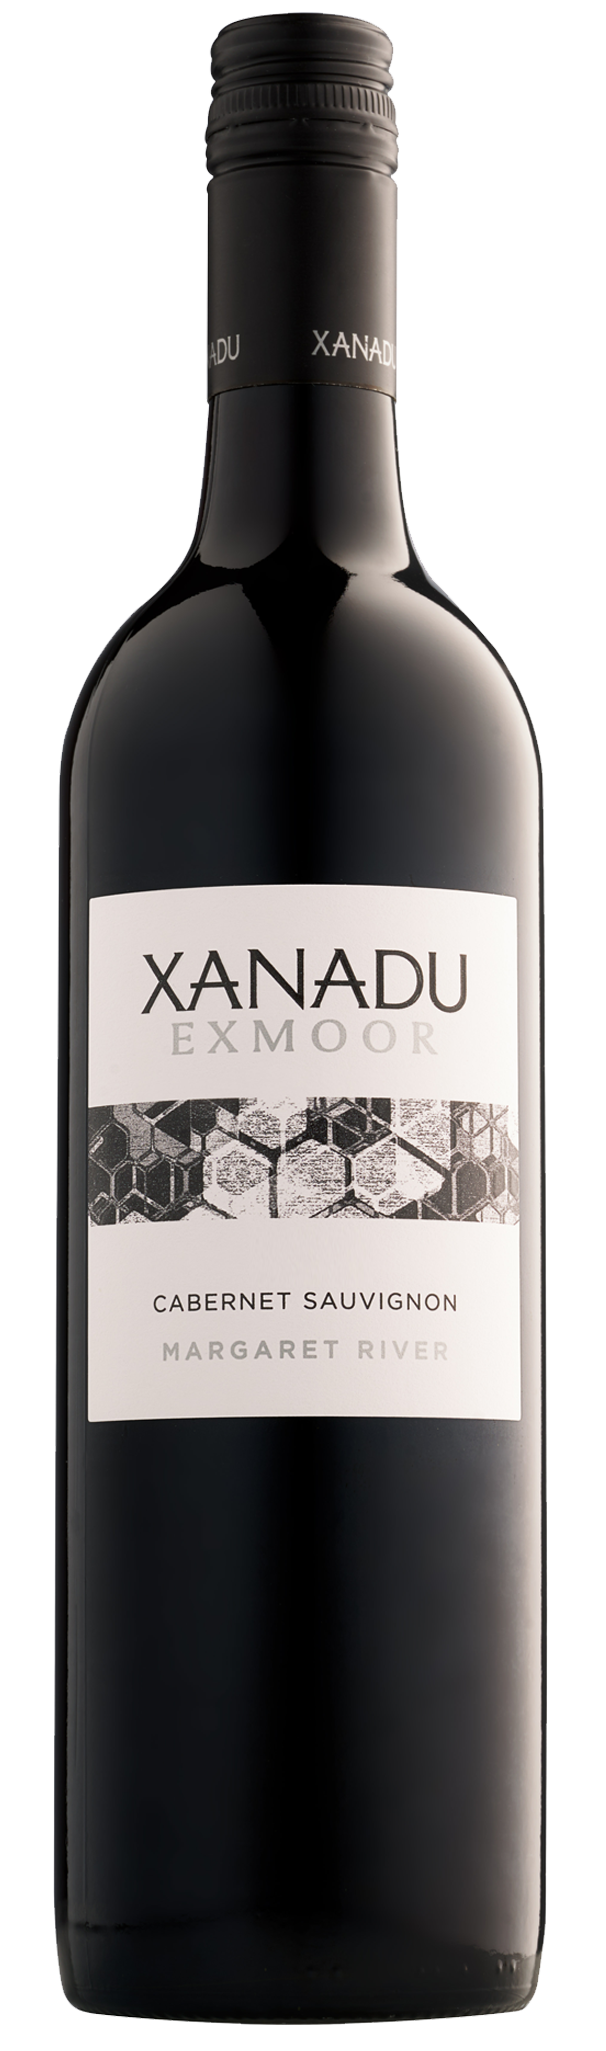 Xanadu Exmoor Cabernet Sauvignon 2016